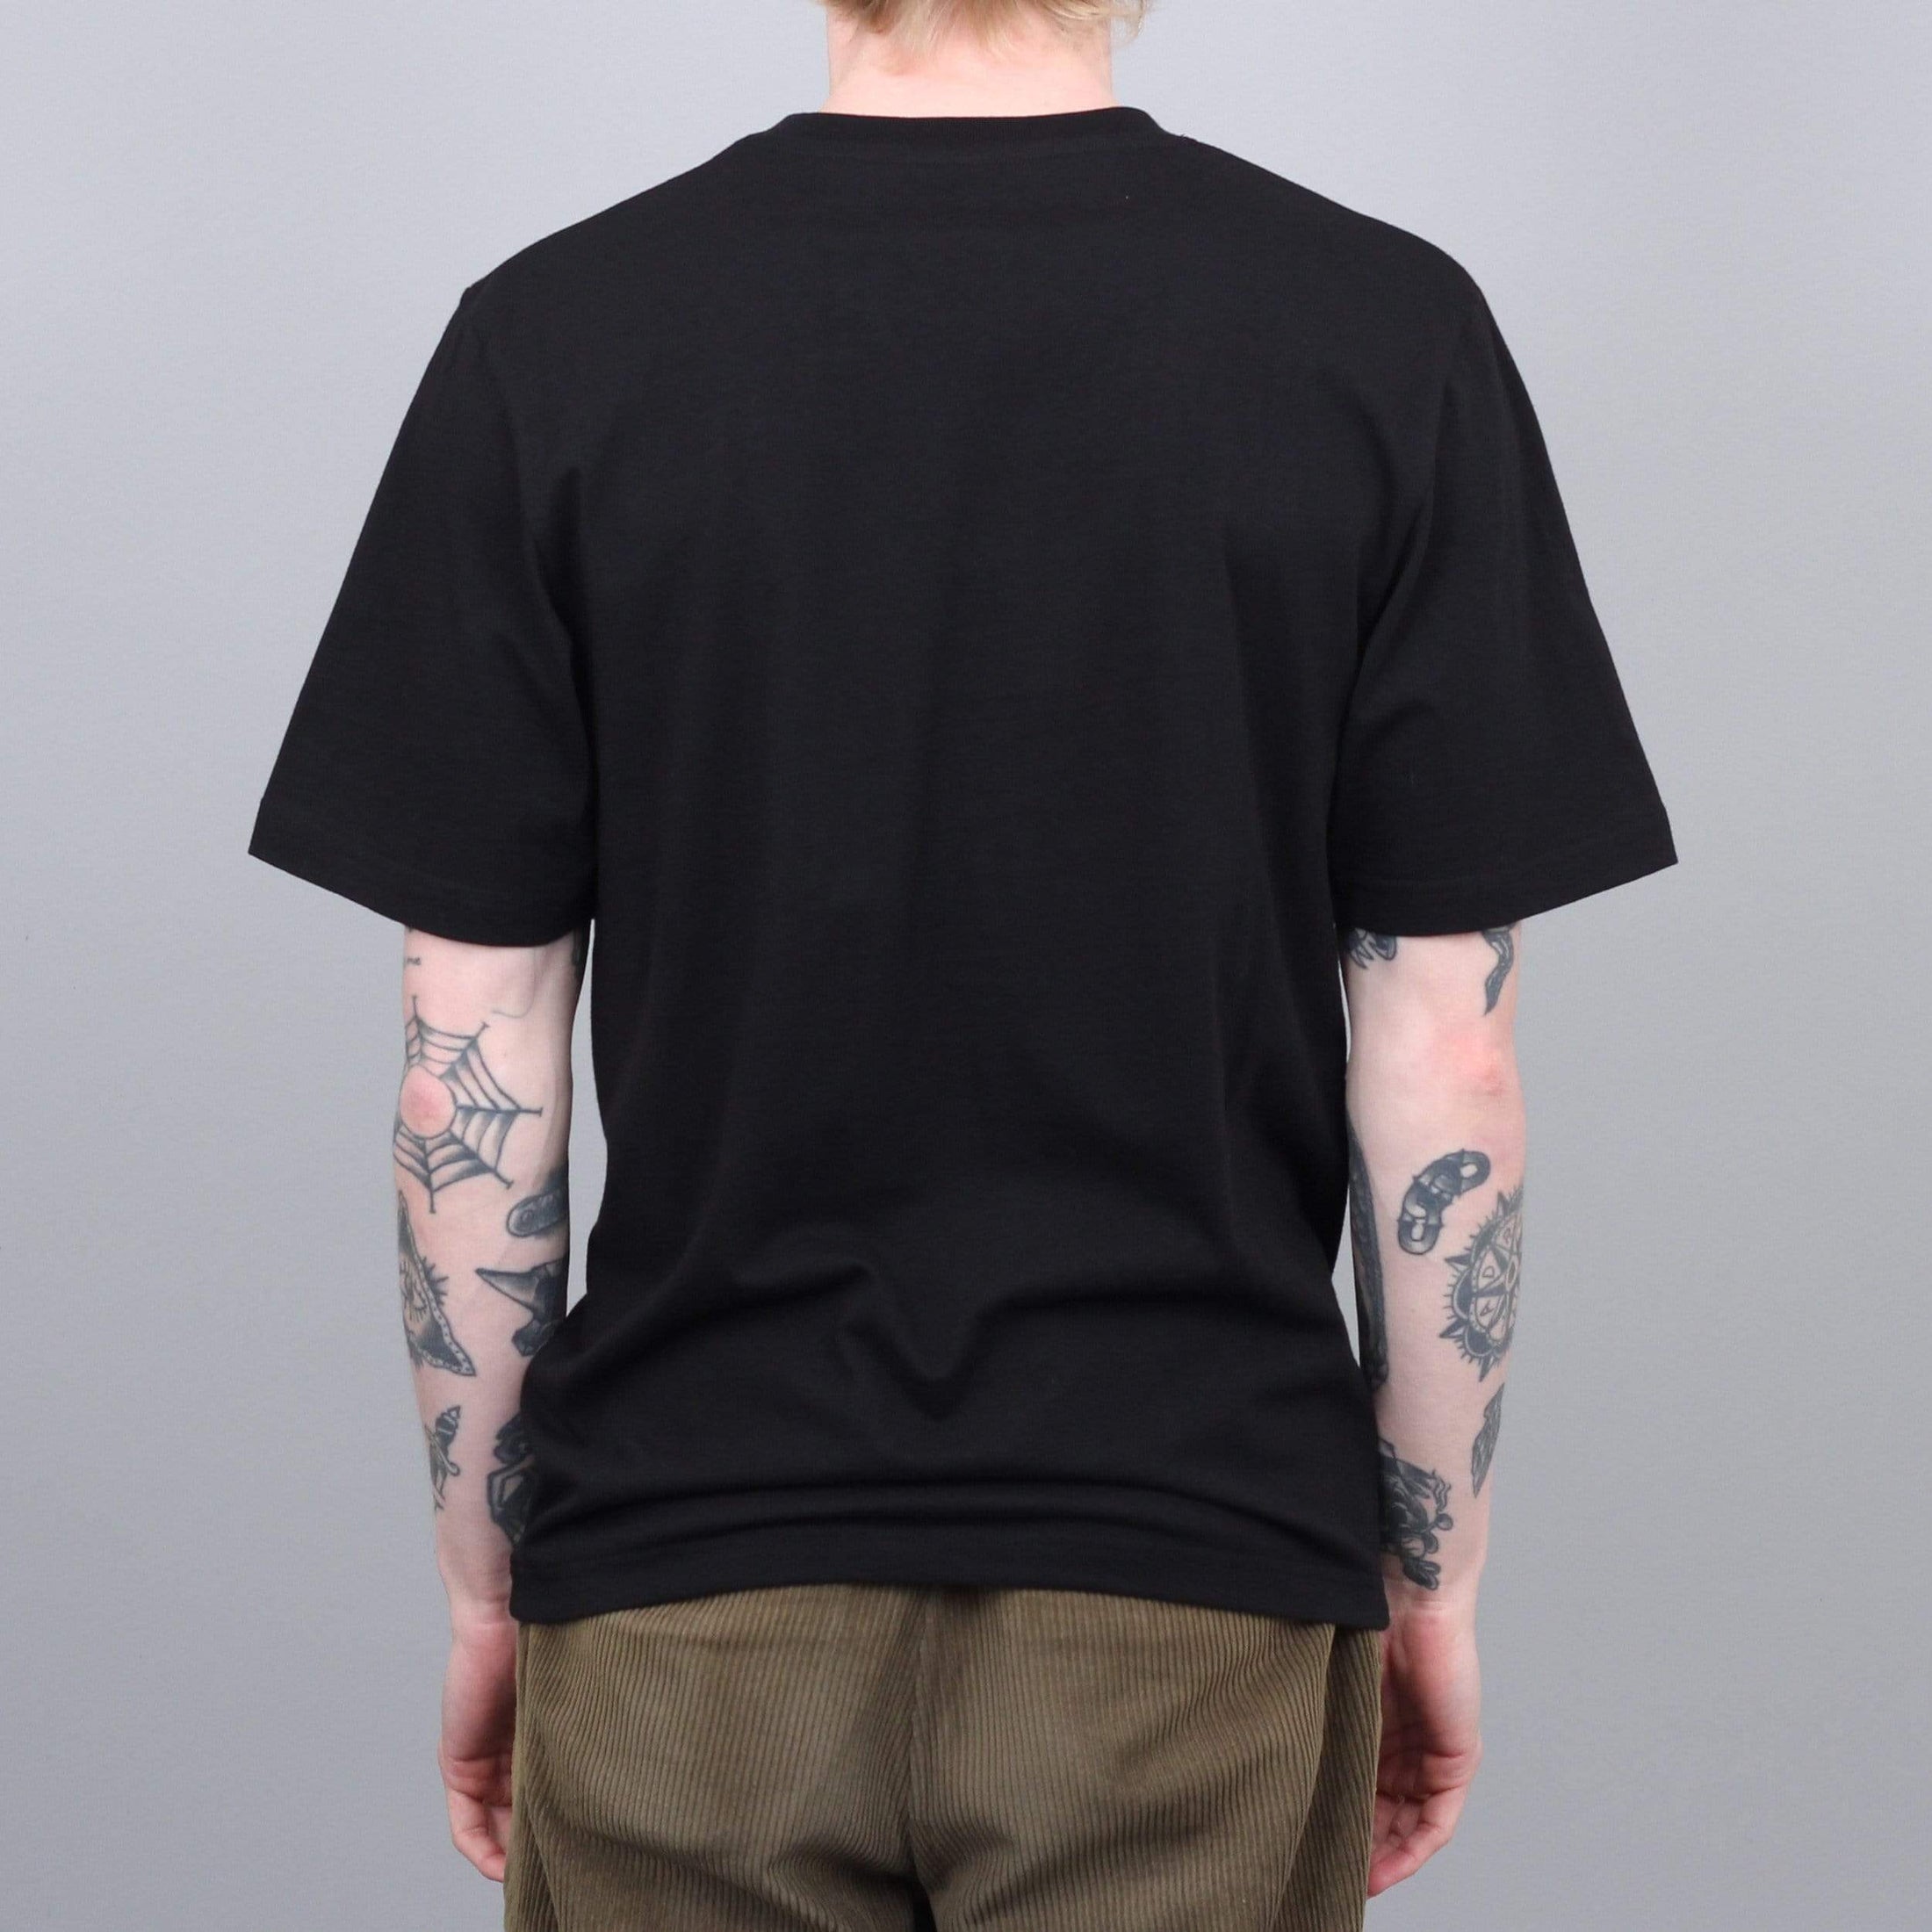 Yardsale Ysnake T-Shirt Black